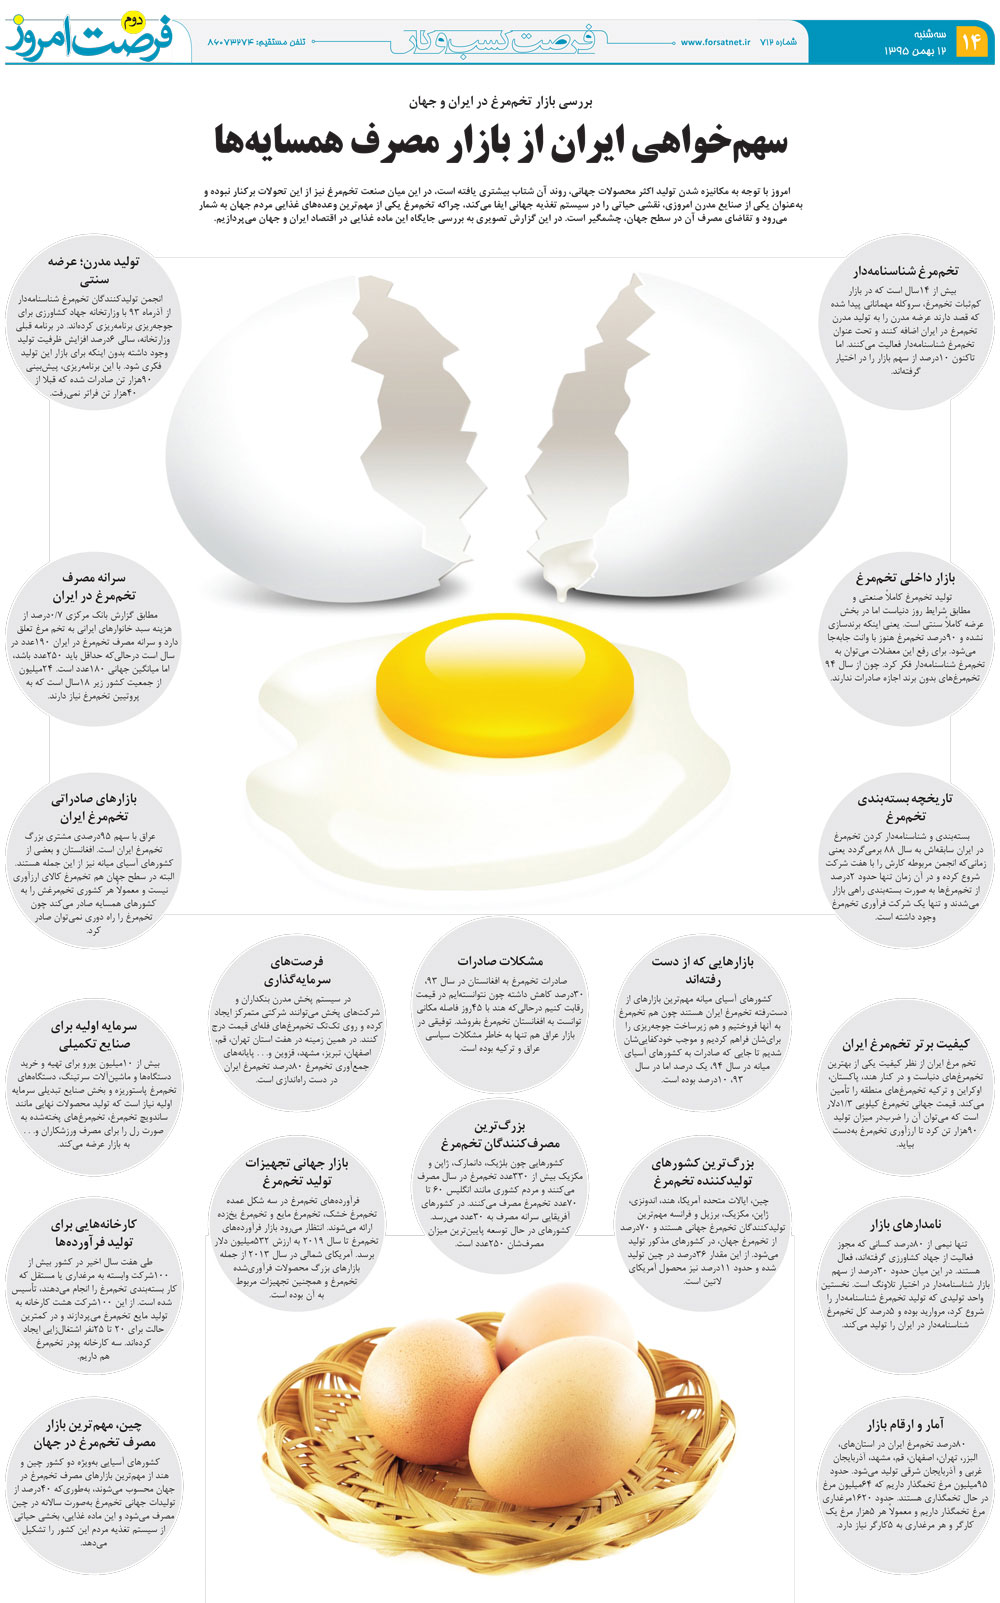 اینفوگراف تخم مرغ ایران و جهان